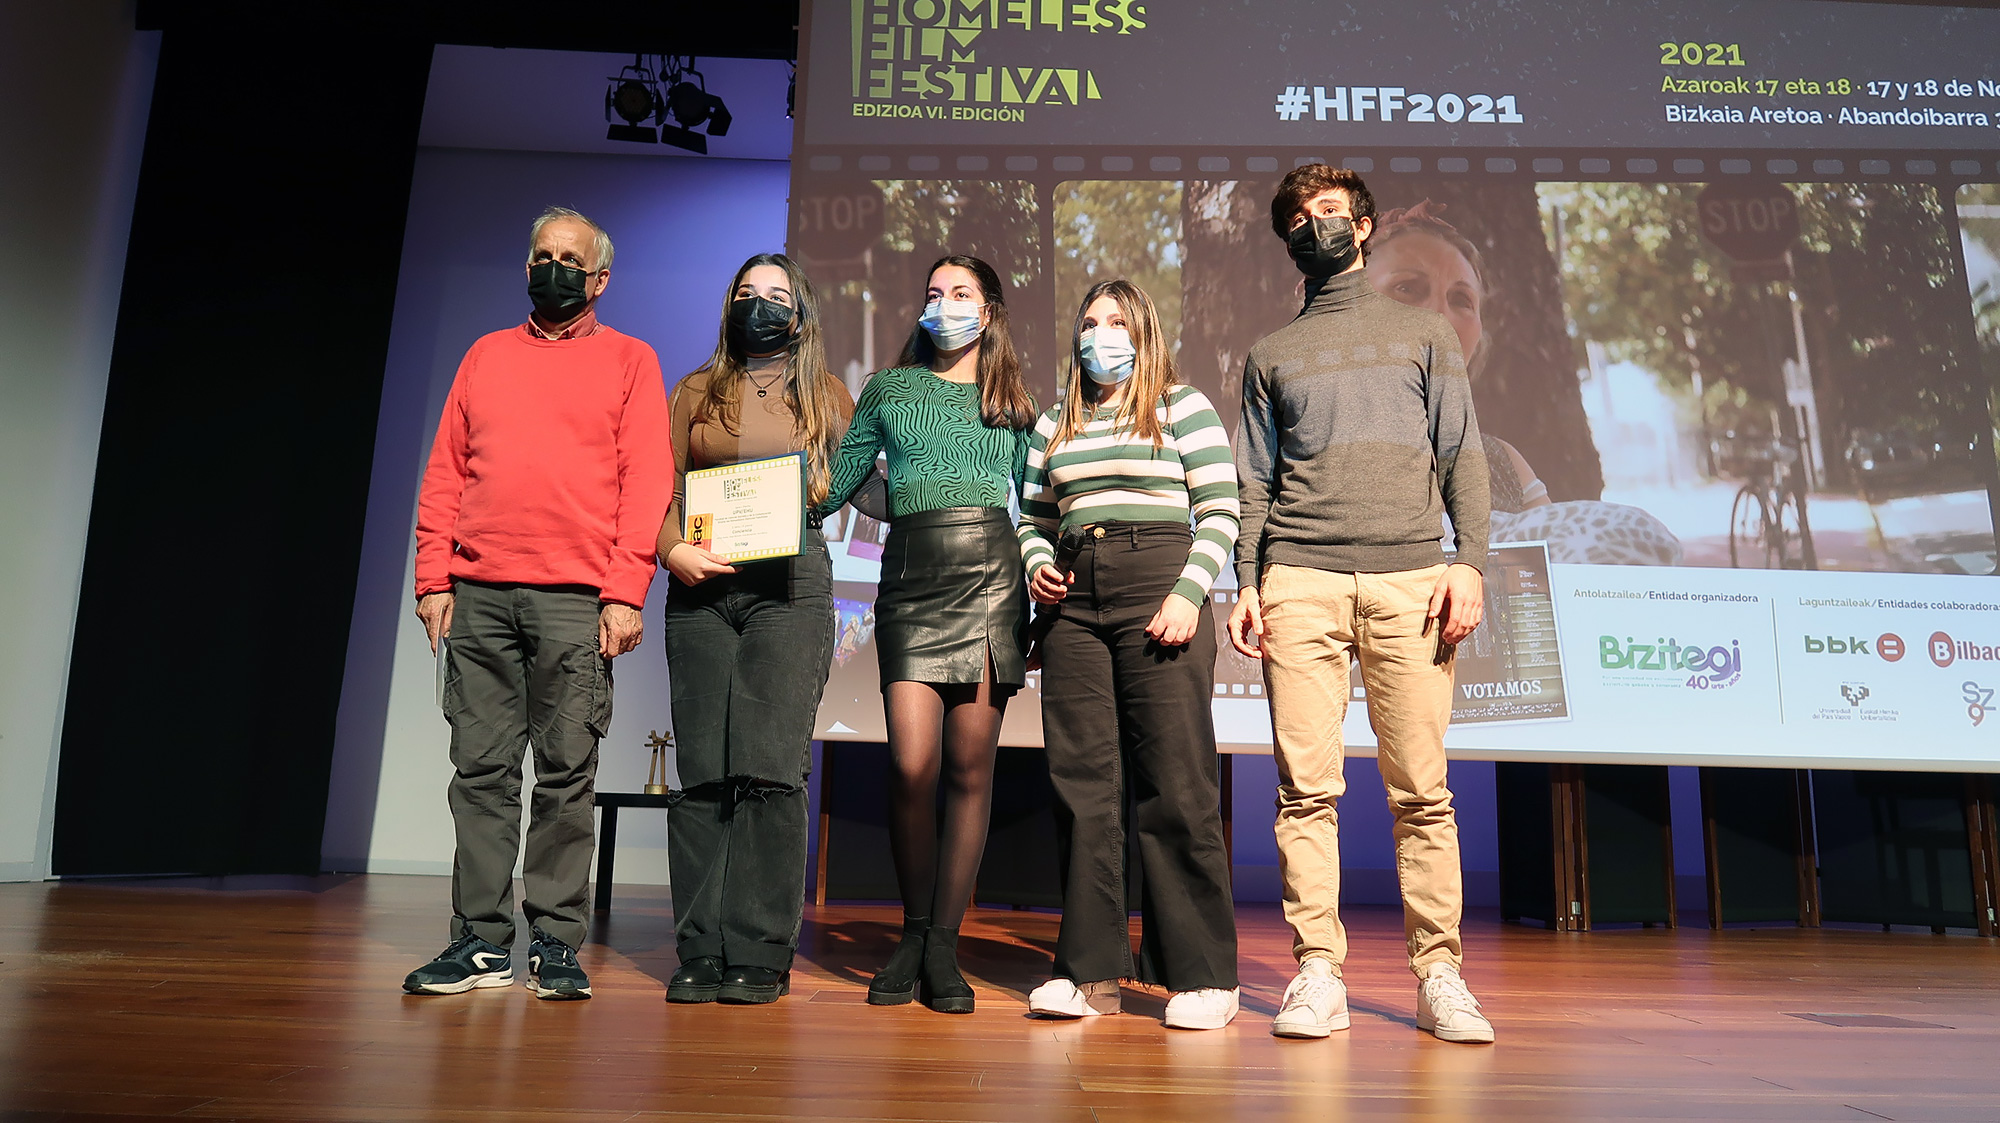 Premios Homeless film Festival de Bizitegi